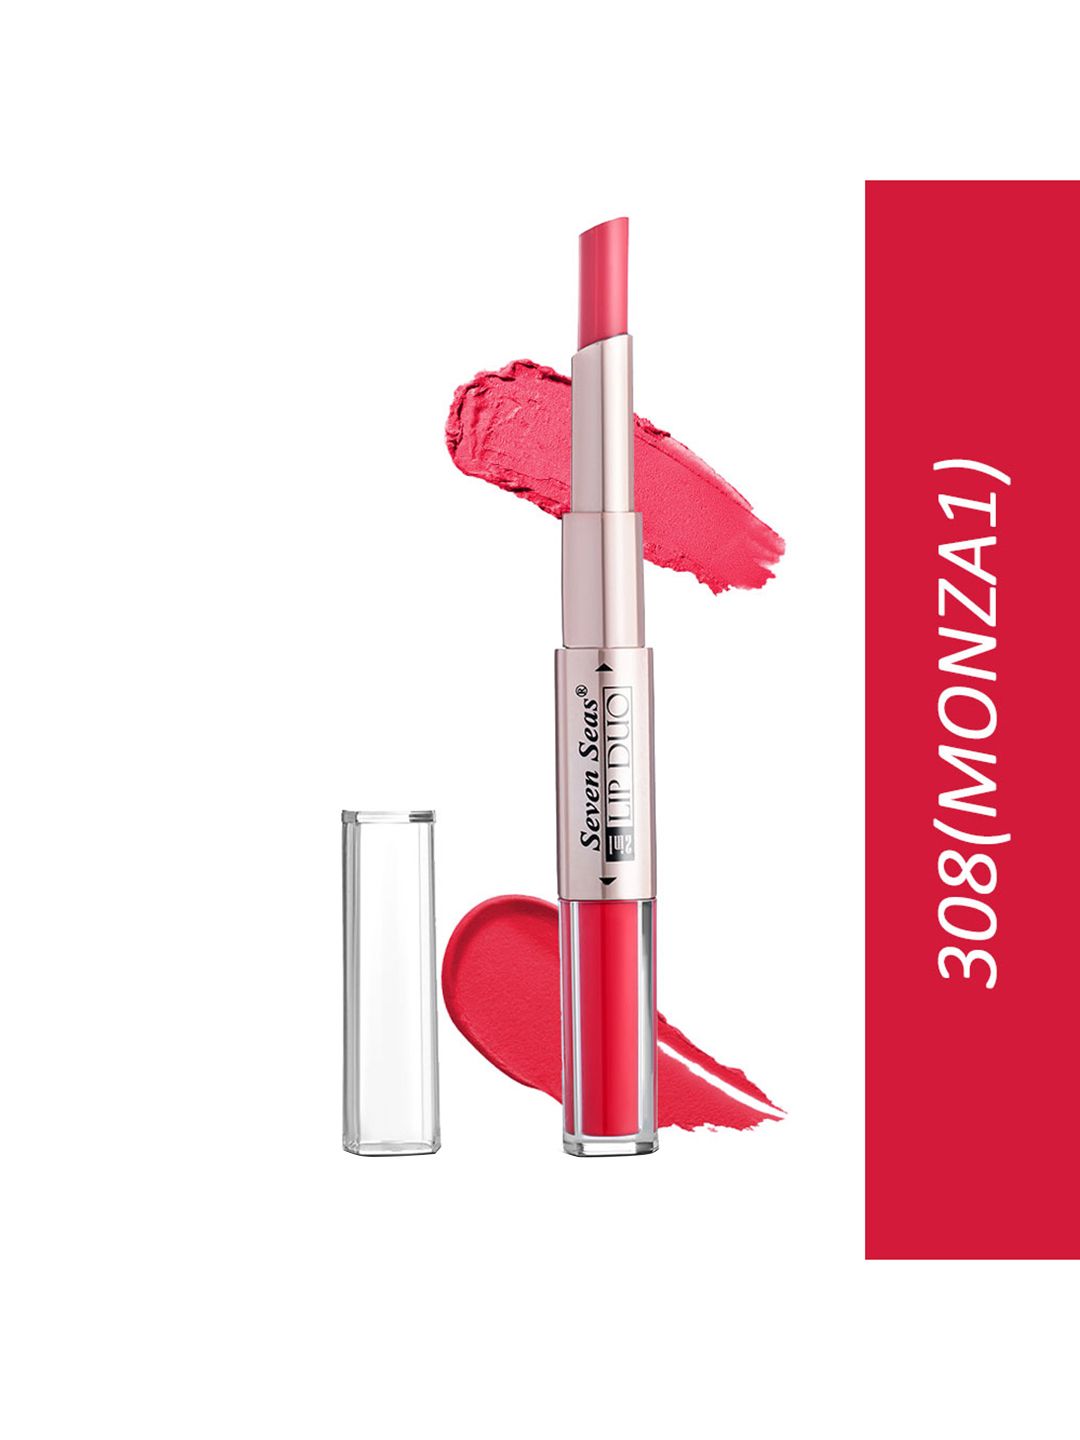 Seven Seas Lip Duo 2 In 1 Liquid Lipstick With Stick Lipstick 308-Monza-I Price in India